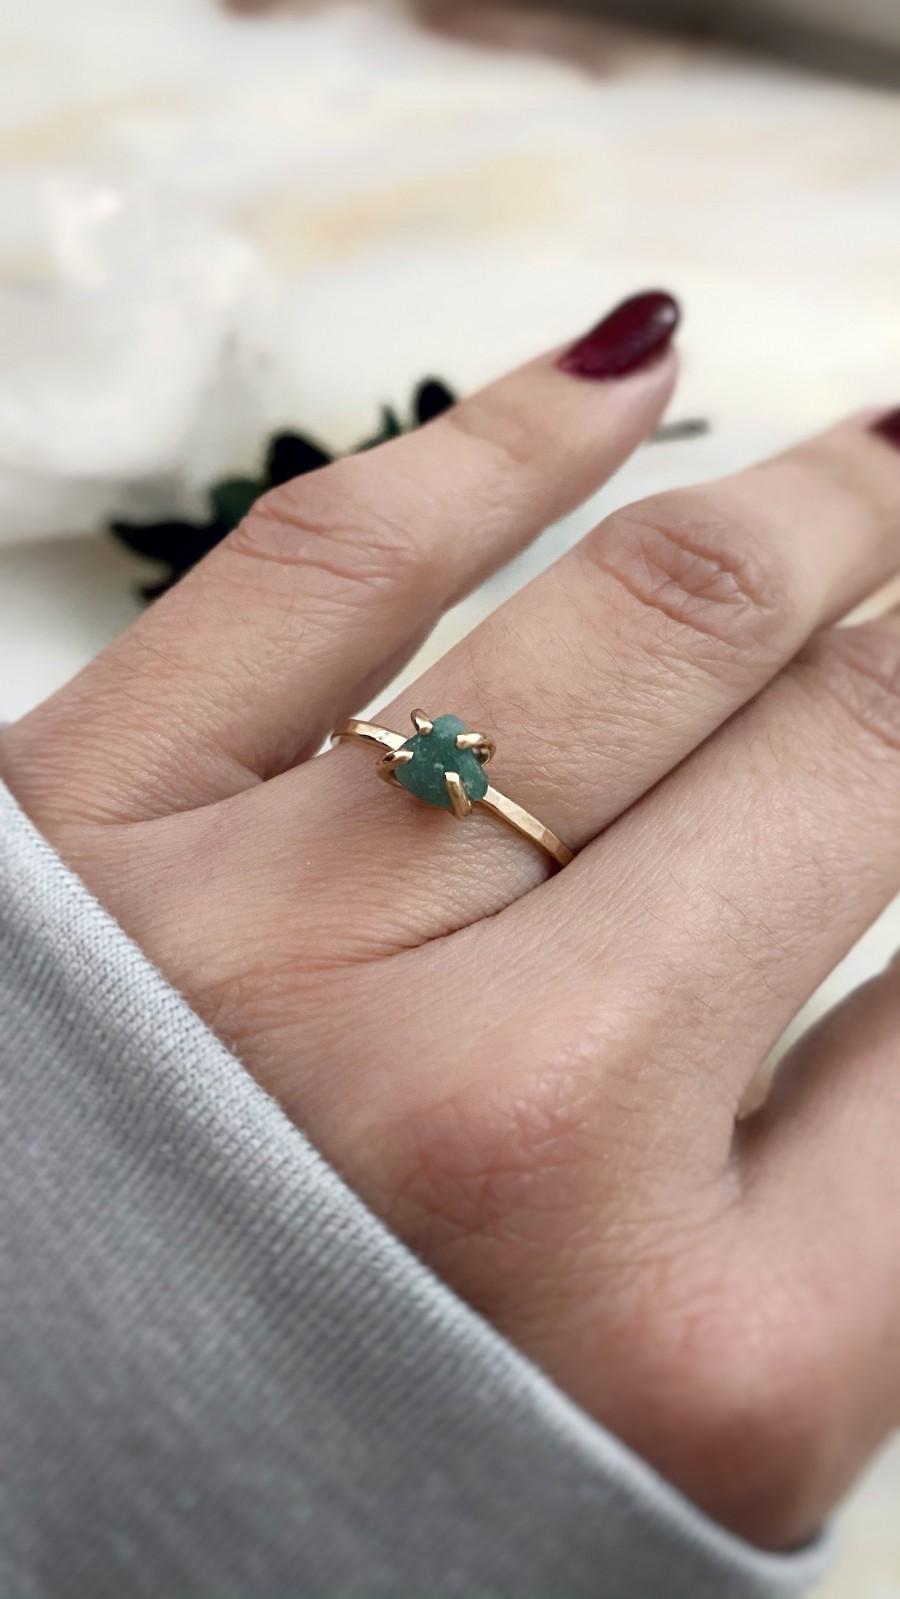 Wedding - Genuine Emerald Ring, Raw Emerald Engagement Ring, Dainty Emerald Ring, Emerald Stacking Ring, Raw Gemstone Ring, May Birthstone Ring